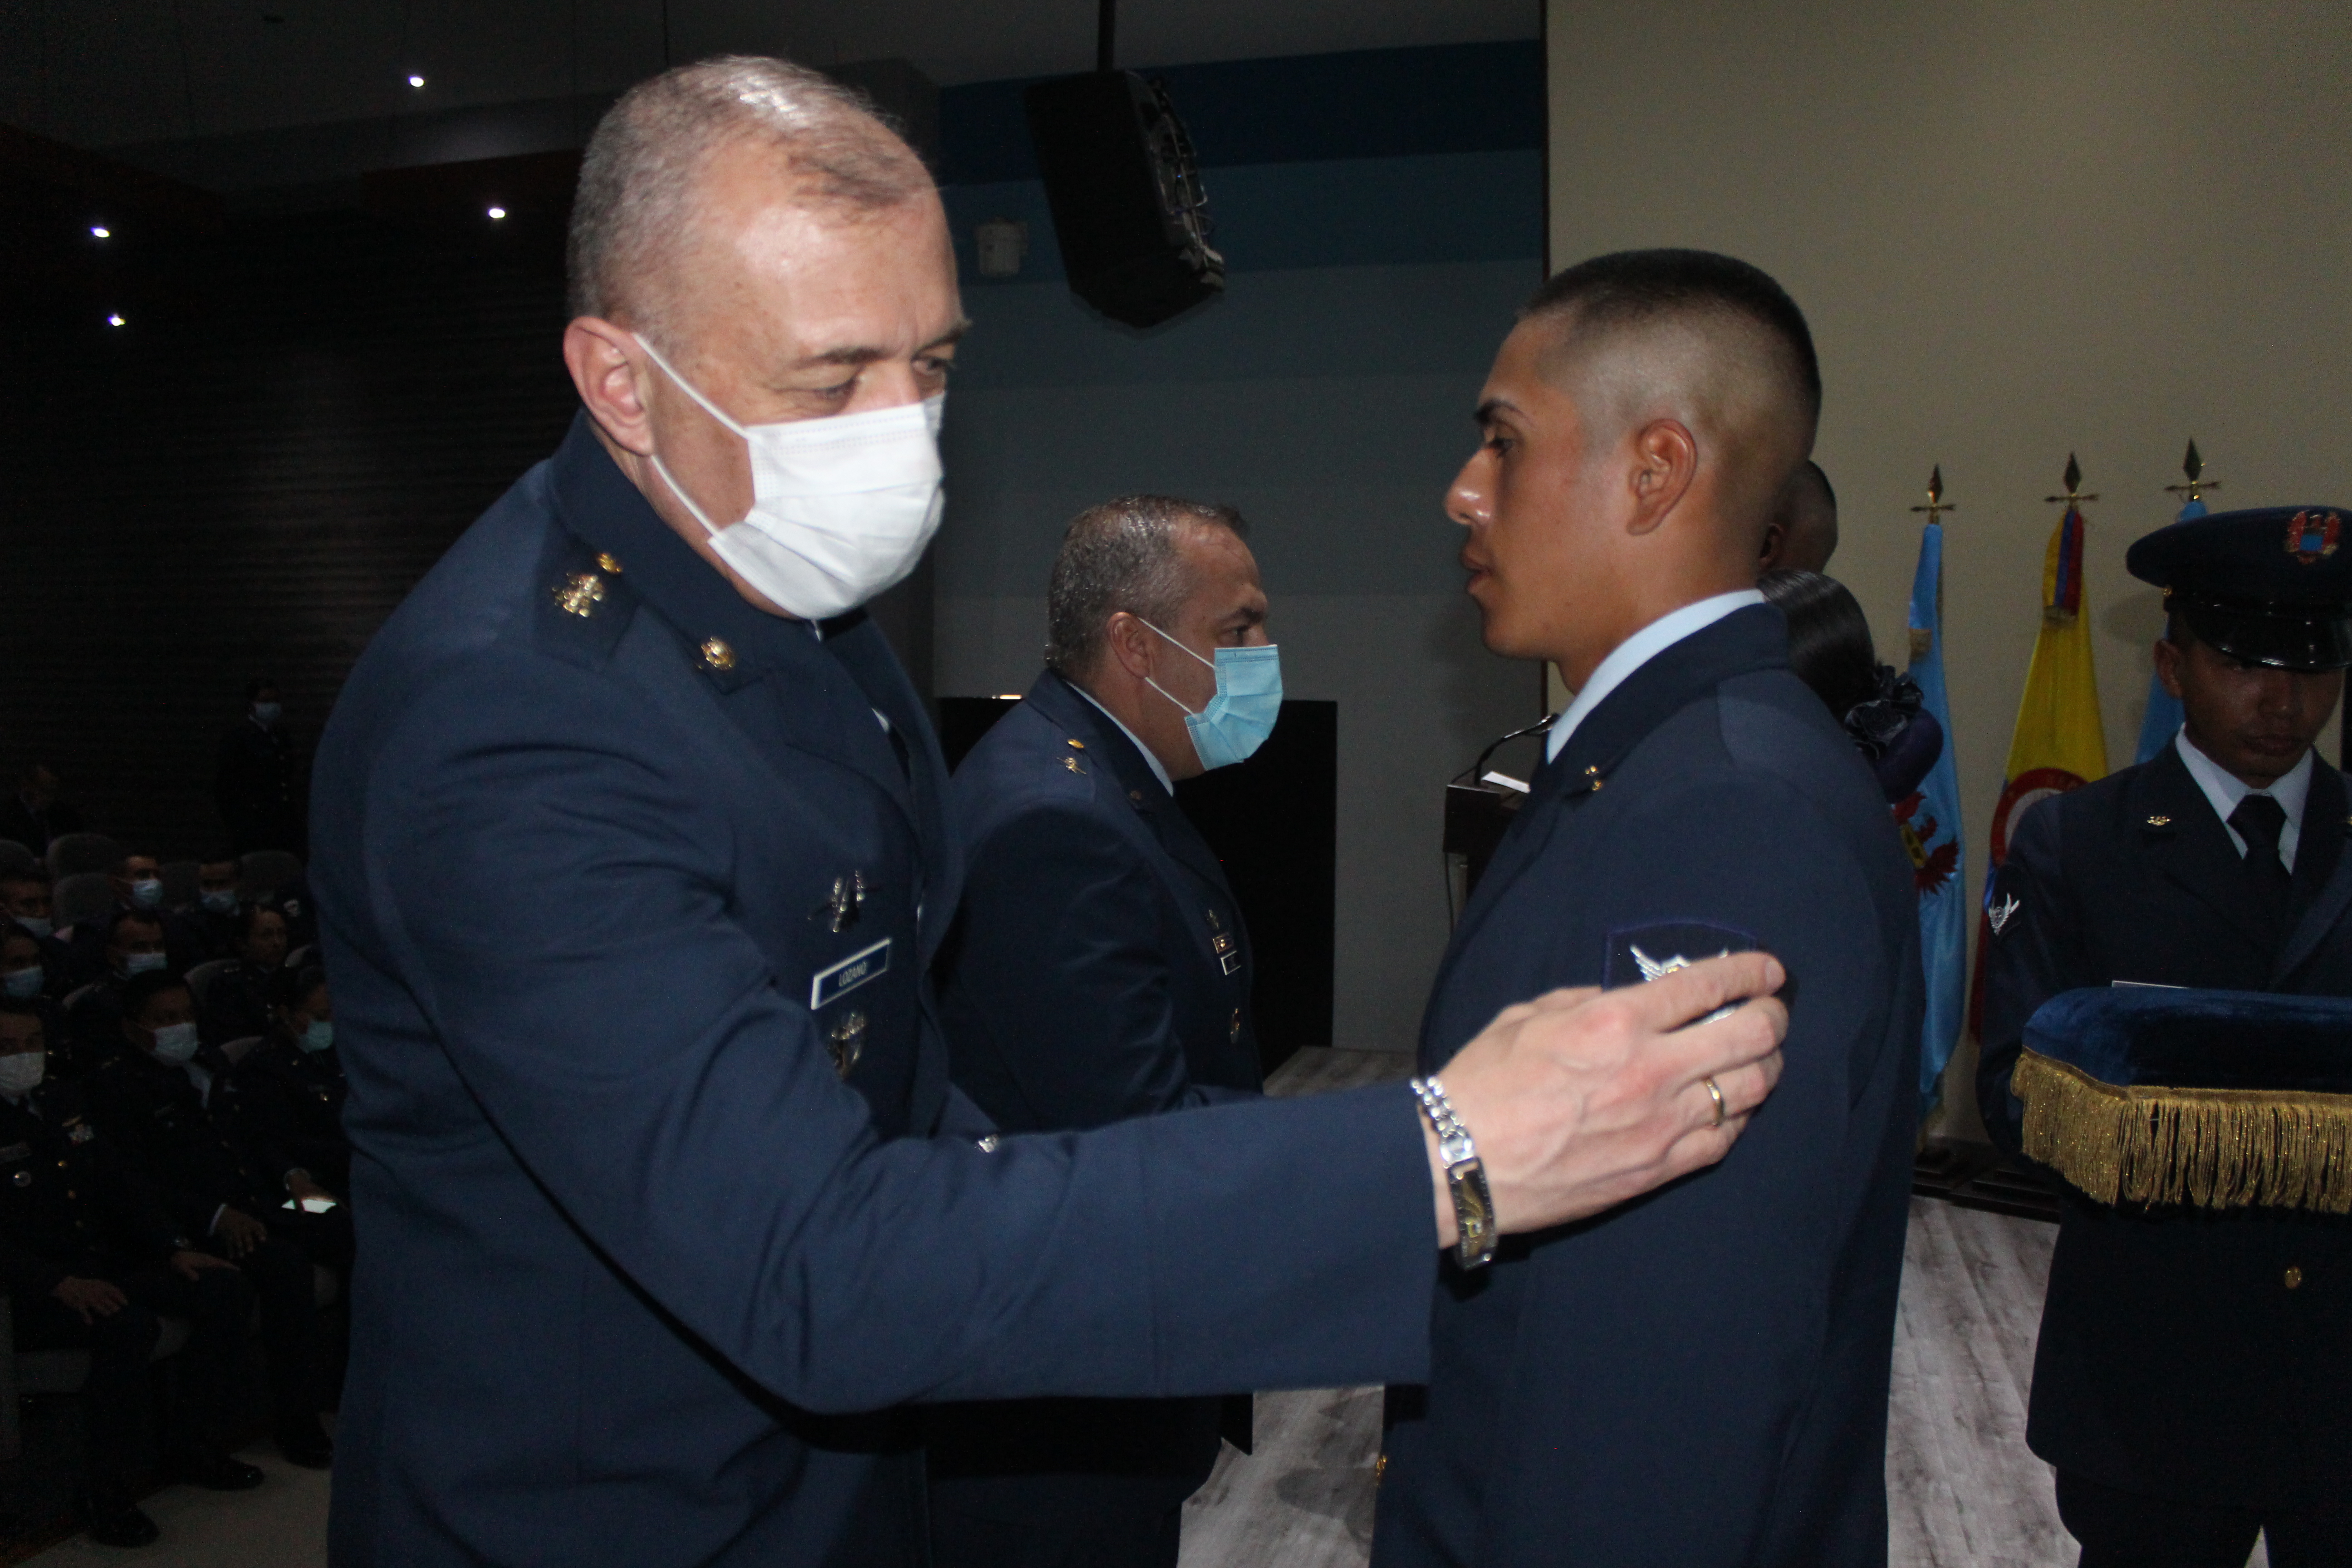 Nuevos Suboficiales del Cuerpo Administrativo de su Fuerza Aérea al servicio de los colombianos